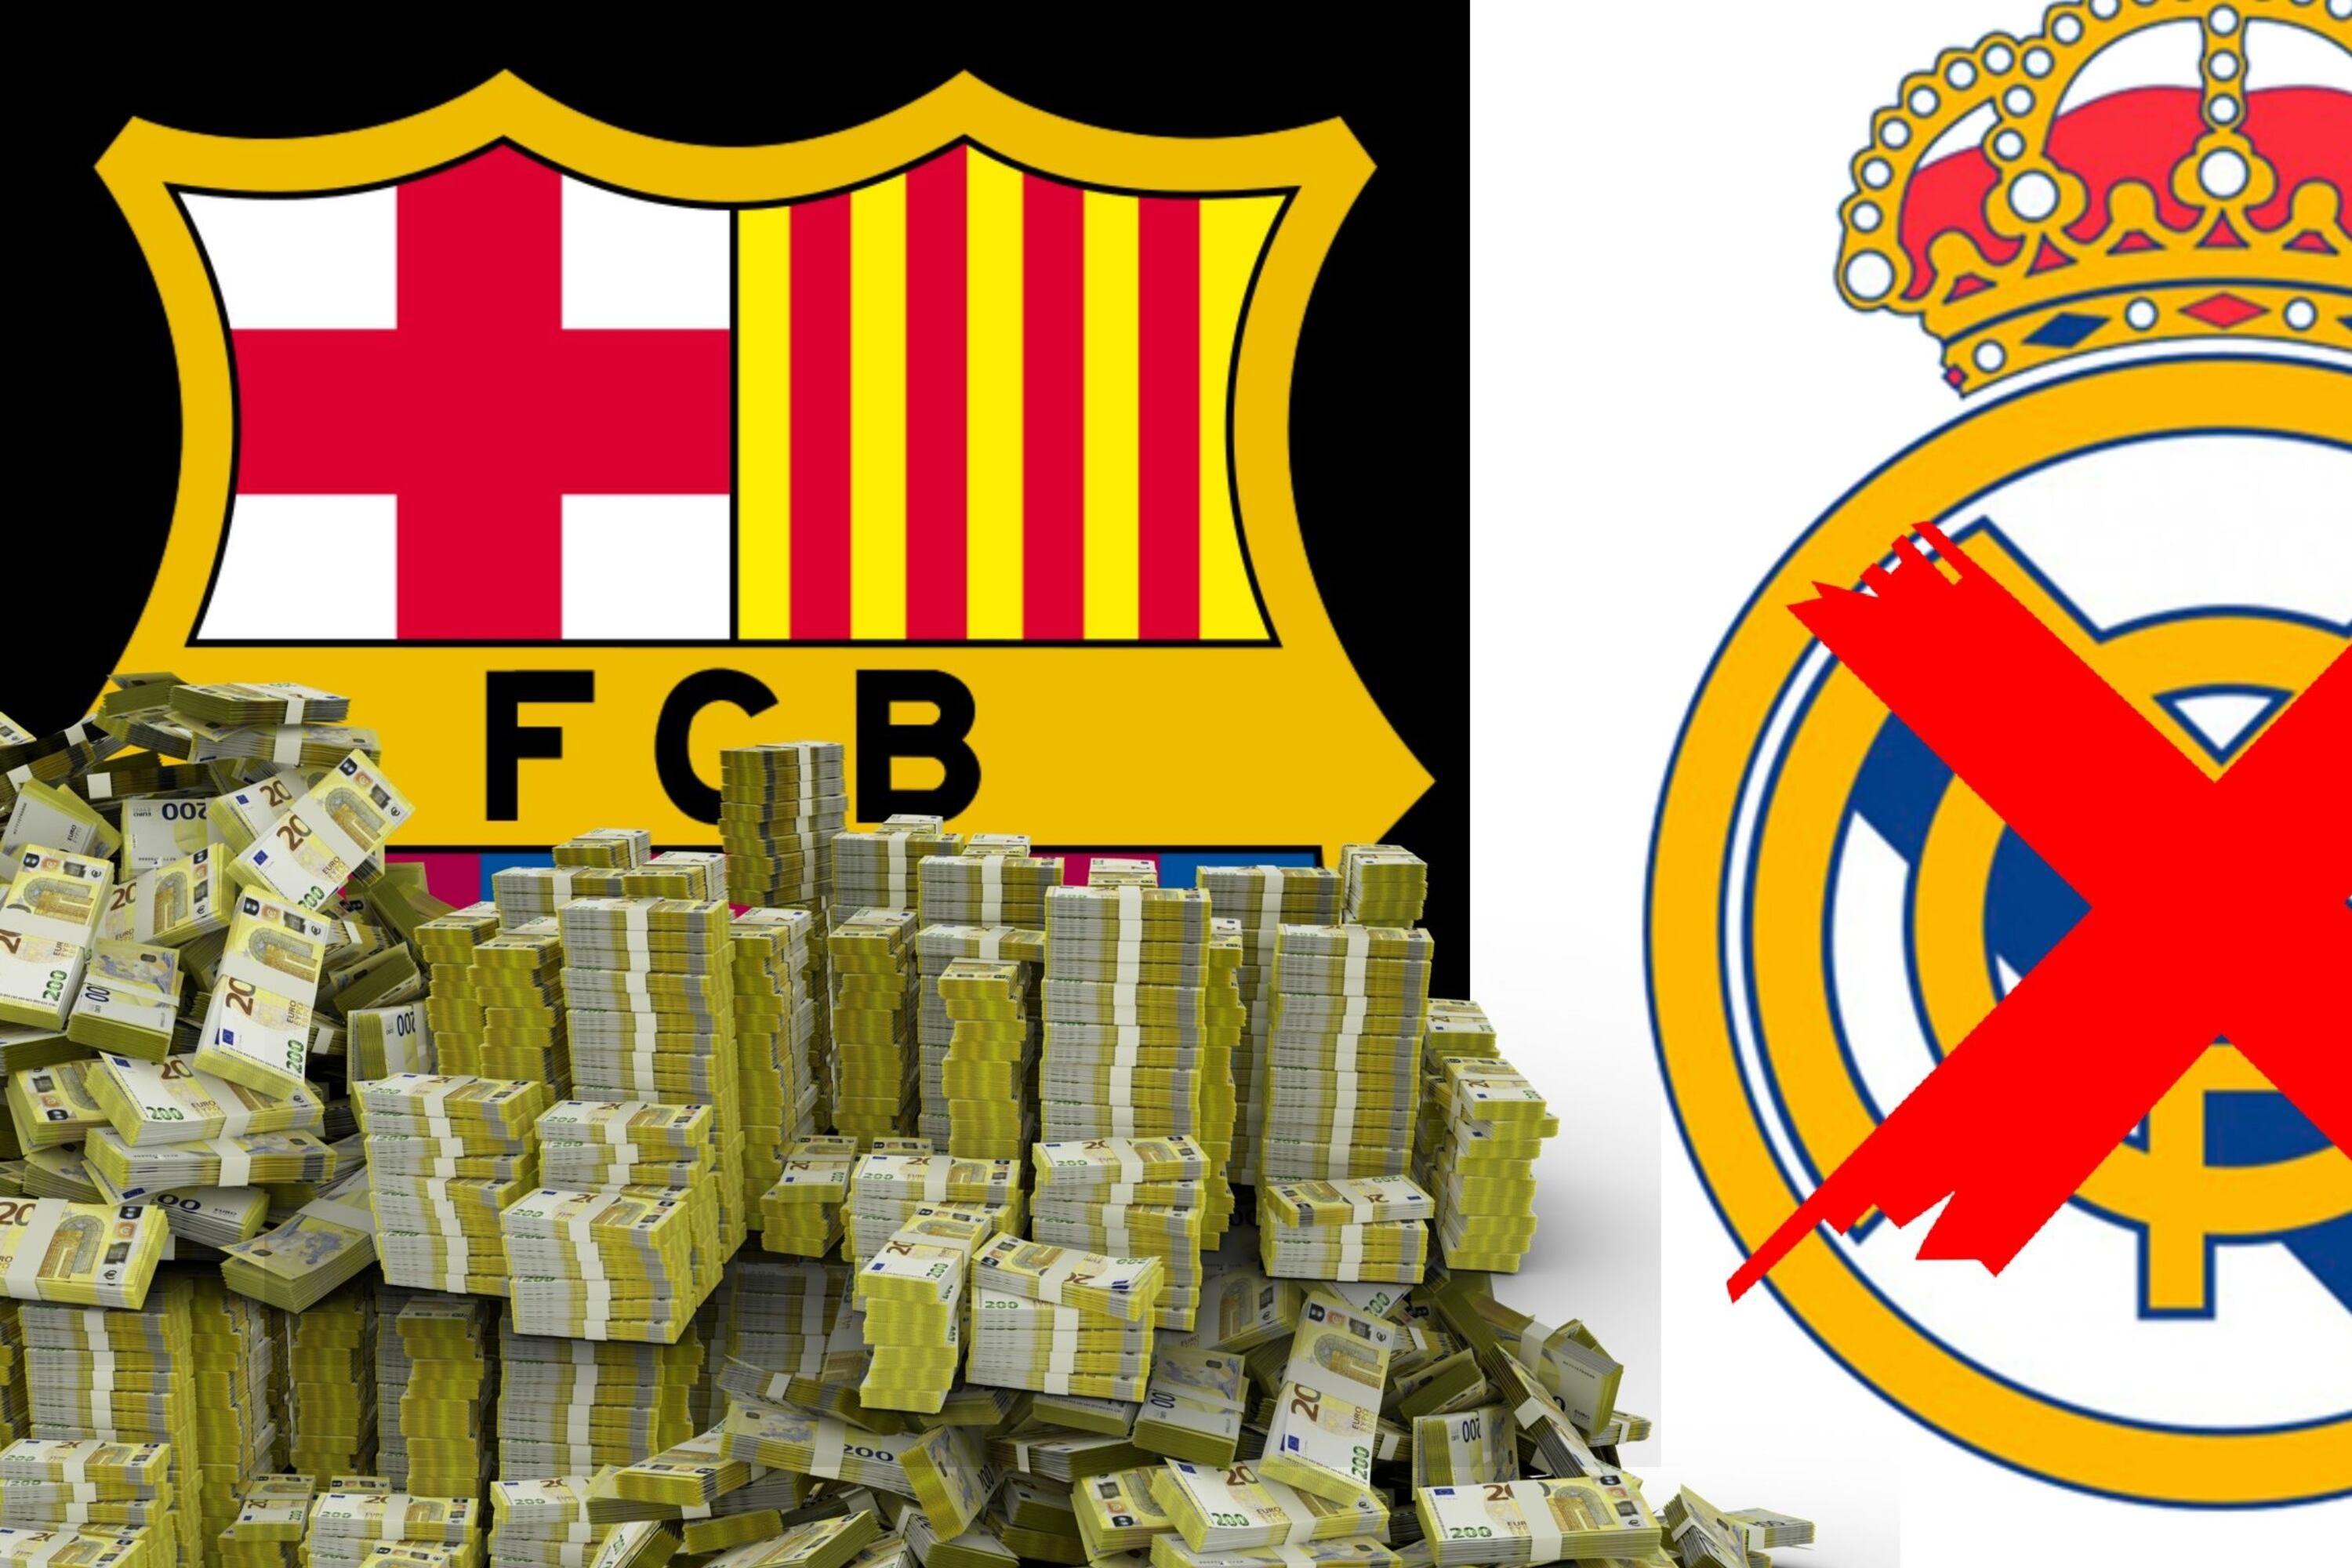 Bronca en Real Madrid, la FIFA pagó millones al Barcelona y a ellos ni un duro